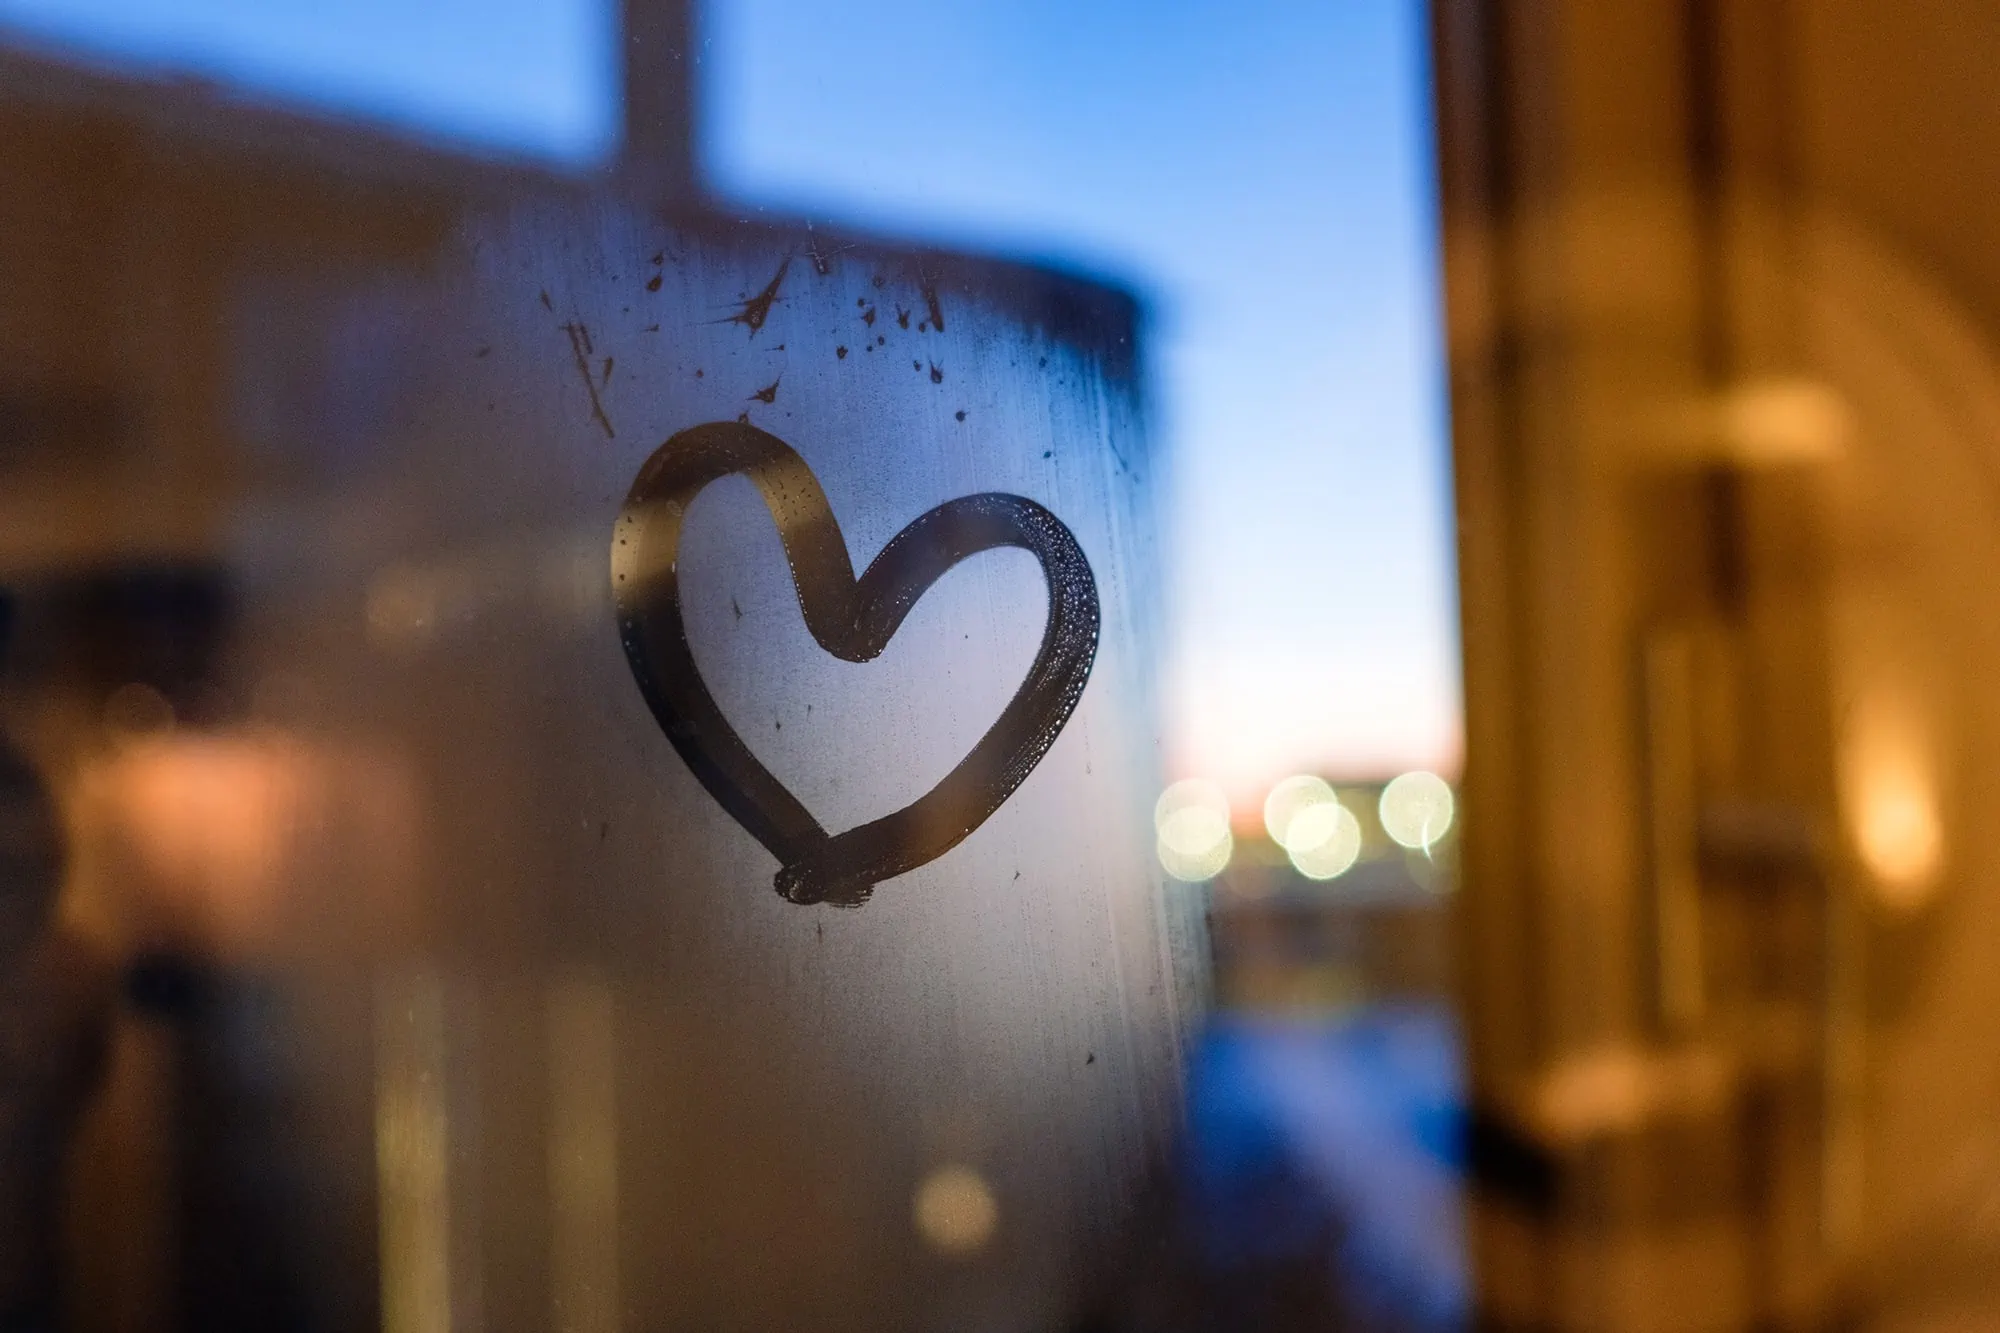 Drawing heart on window in winter